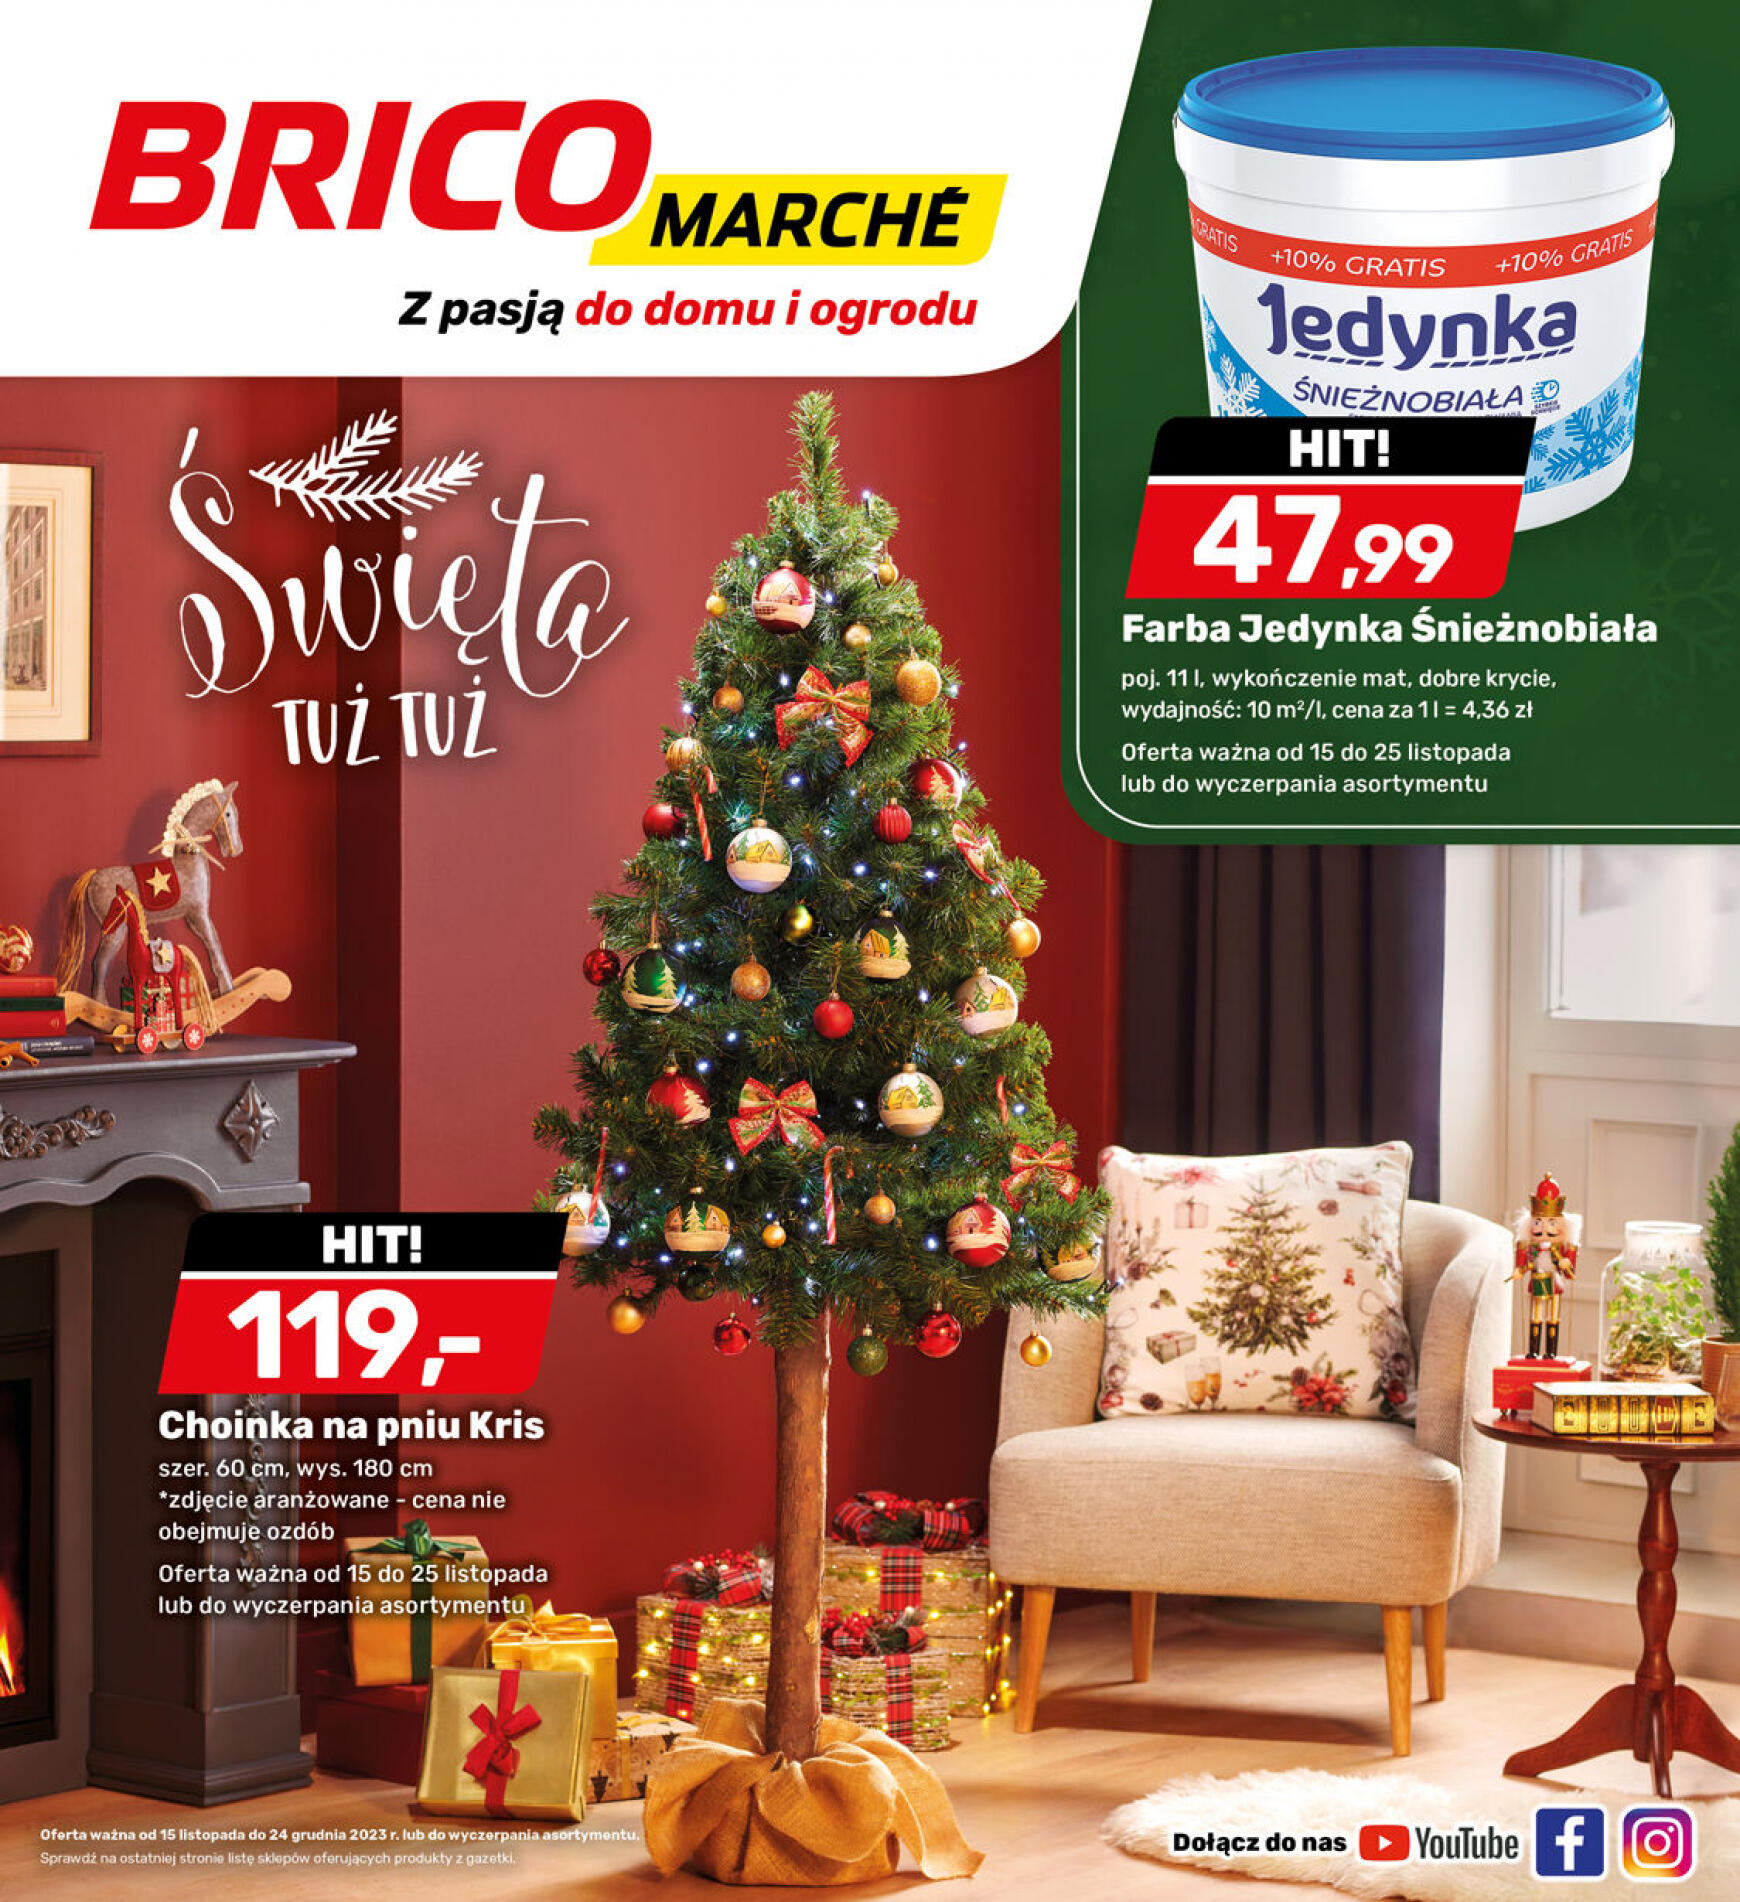 brico-marche - - Bricomarche - page: 18